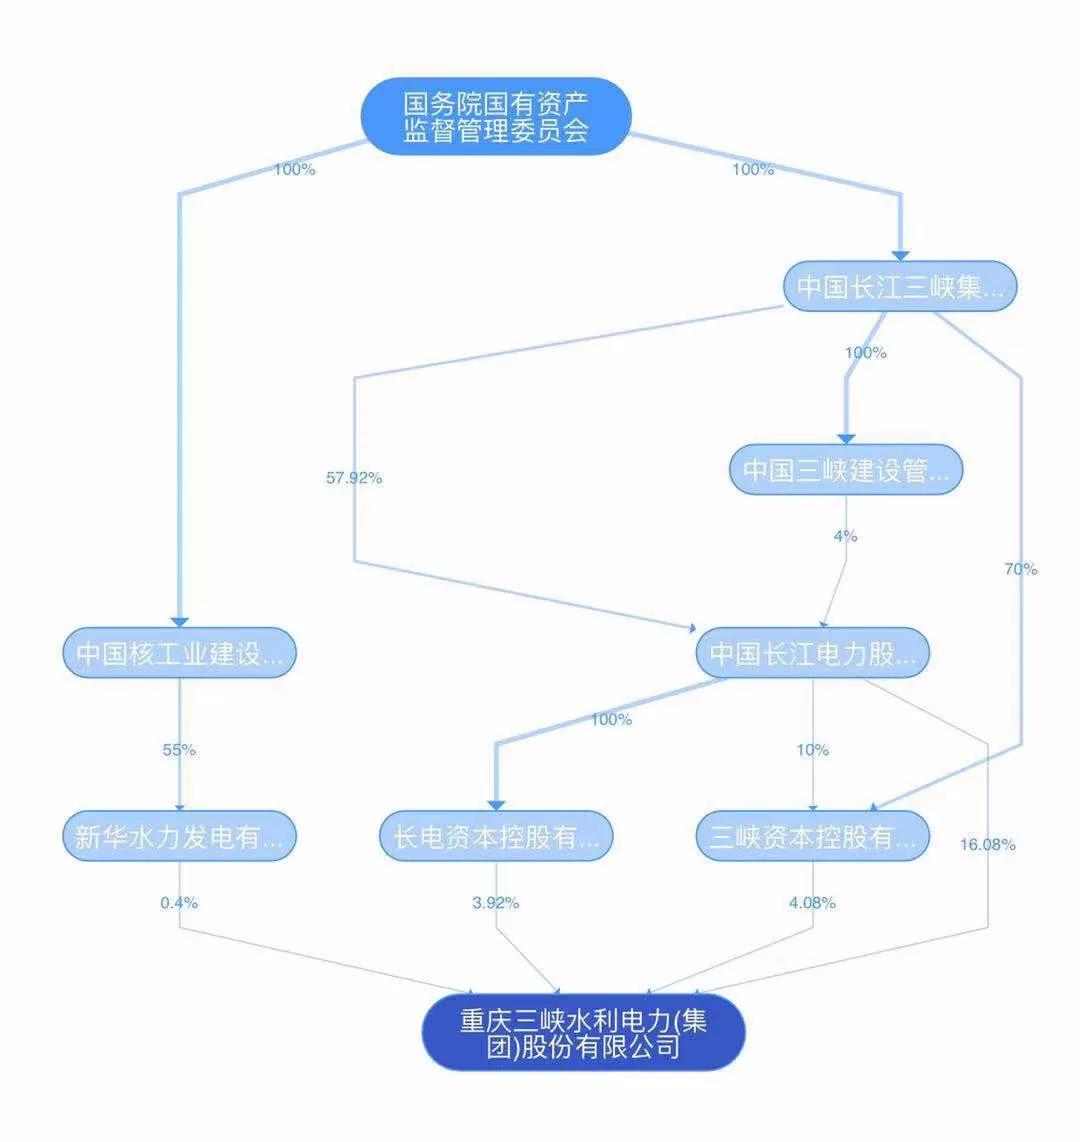 三峡集团旗下公司将整合重庆几大地方电网 并与黔、湘等电网联网运行